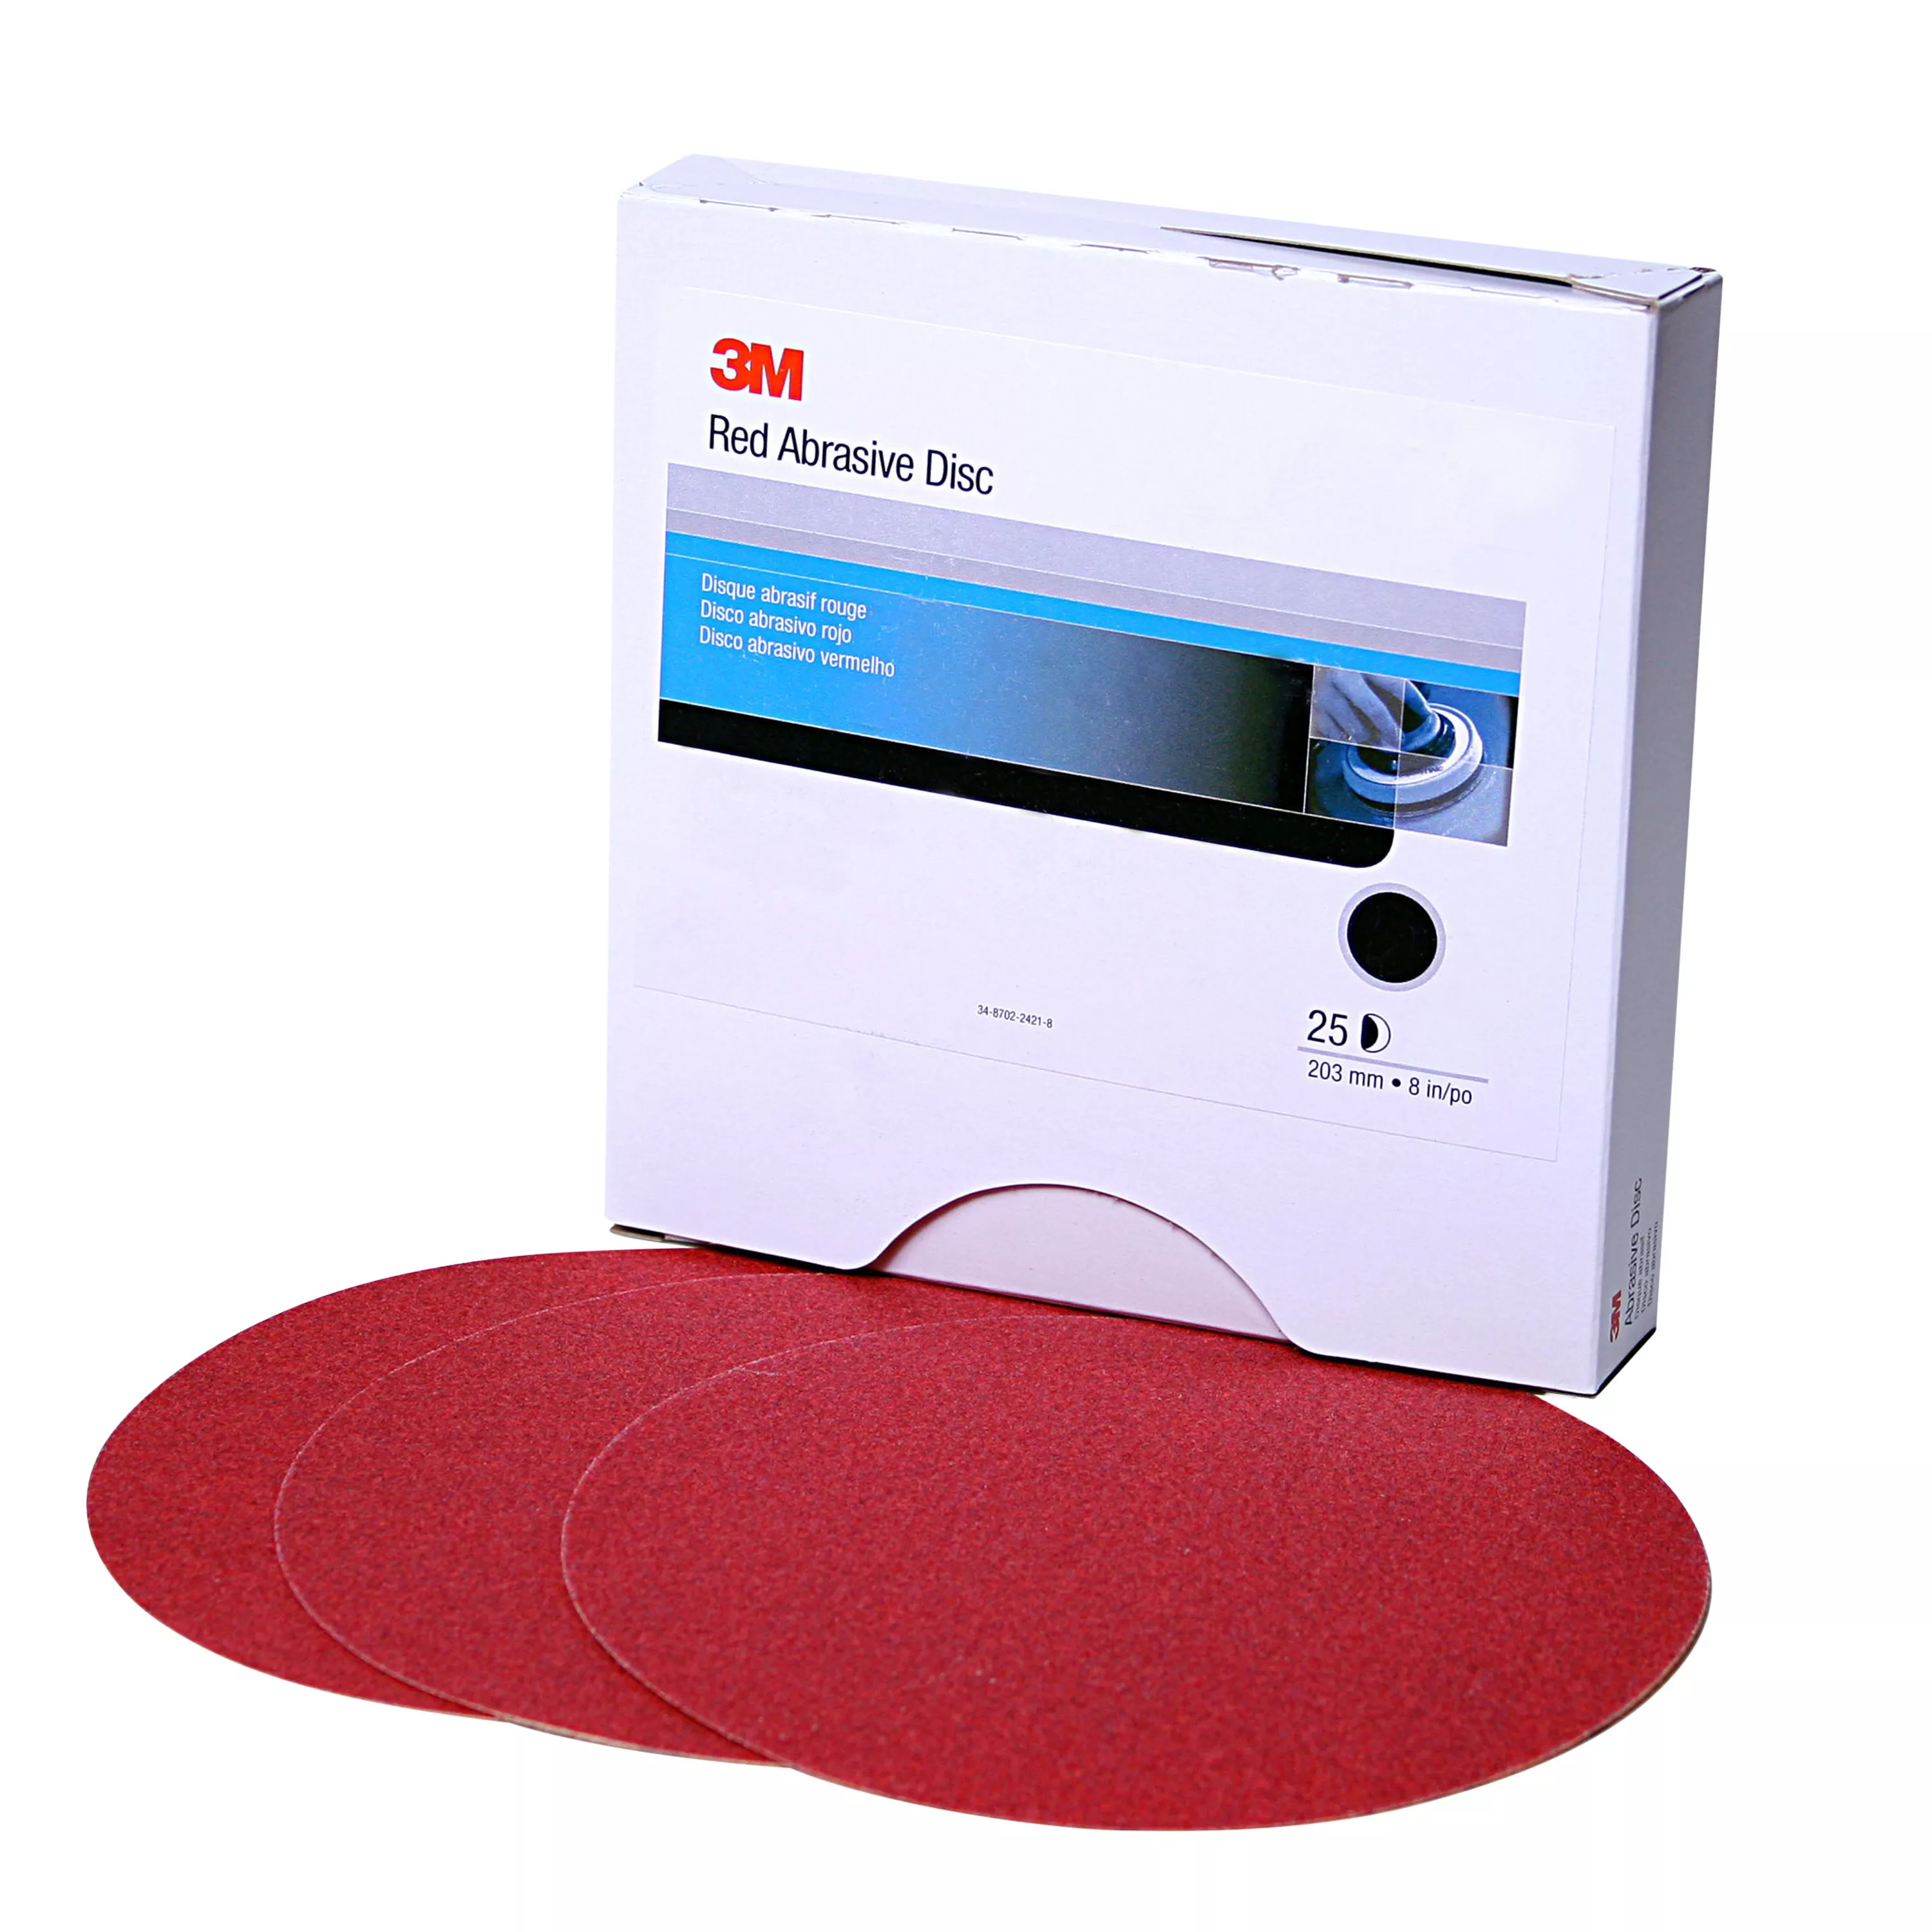 3M™ Red Abrasive Stikit™ Disc, 01110, 6 in, P240 grade, 100 discs per
roll, 6 rolls per case